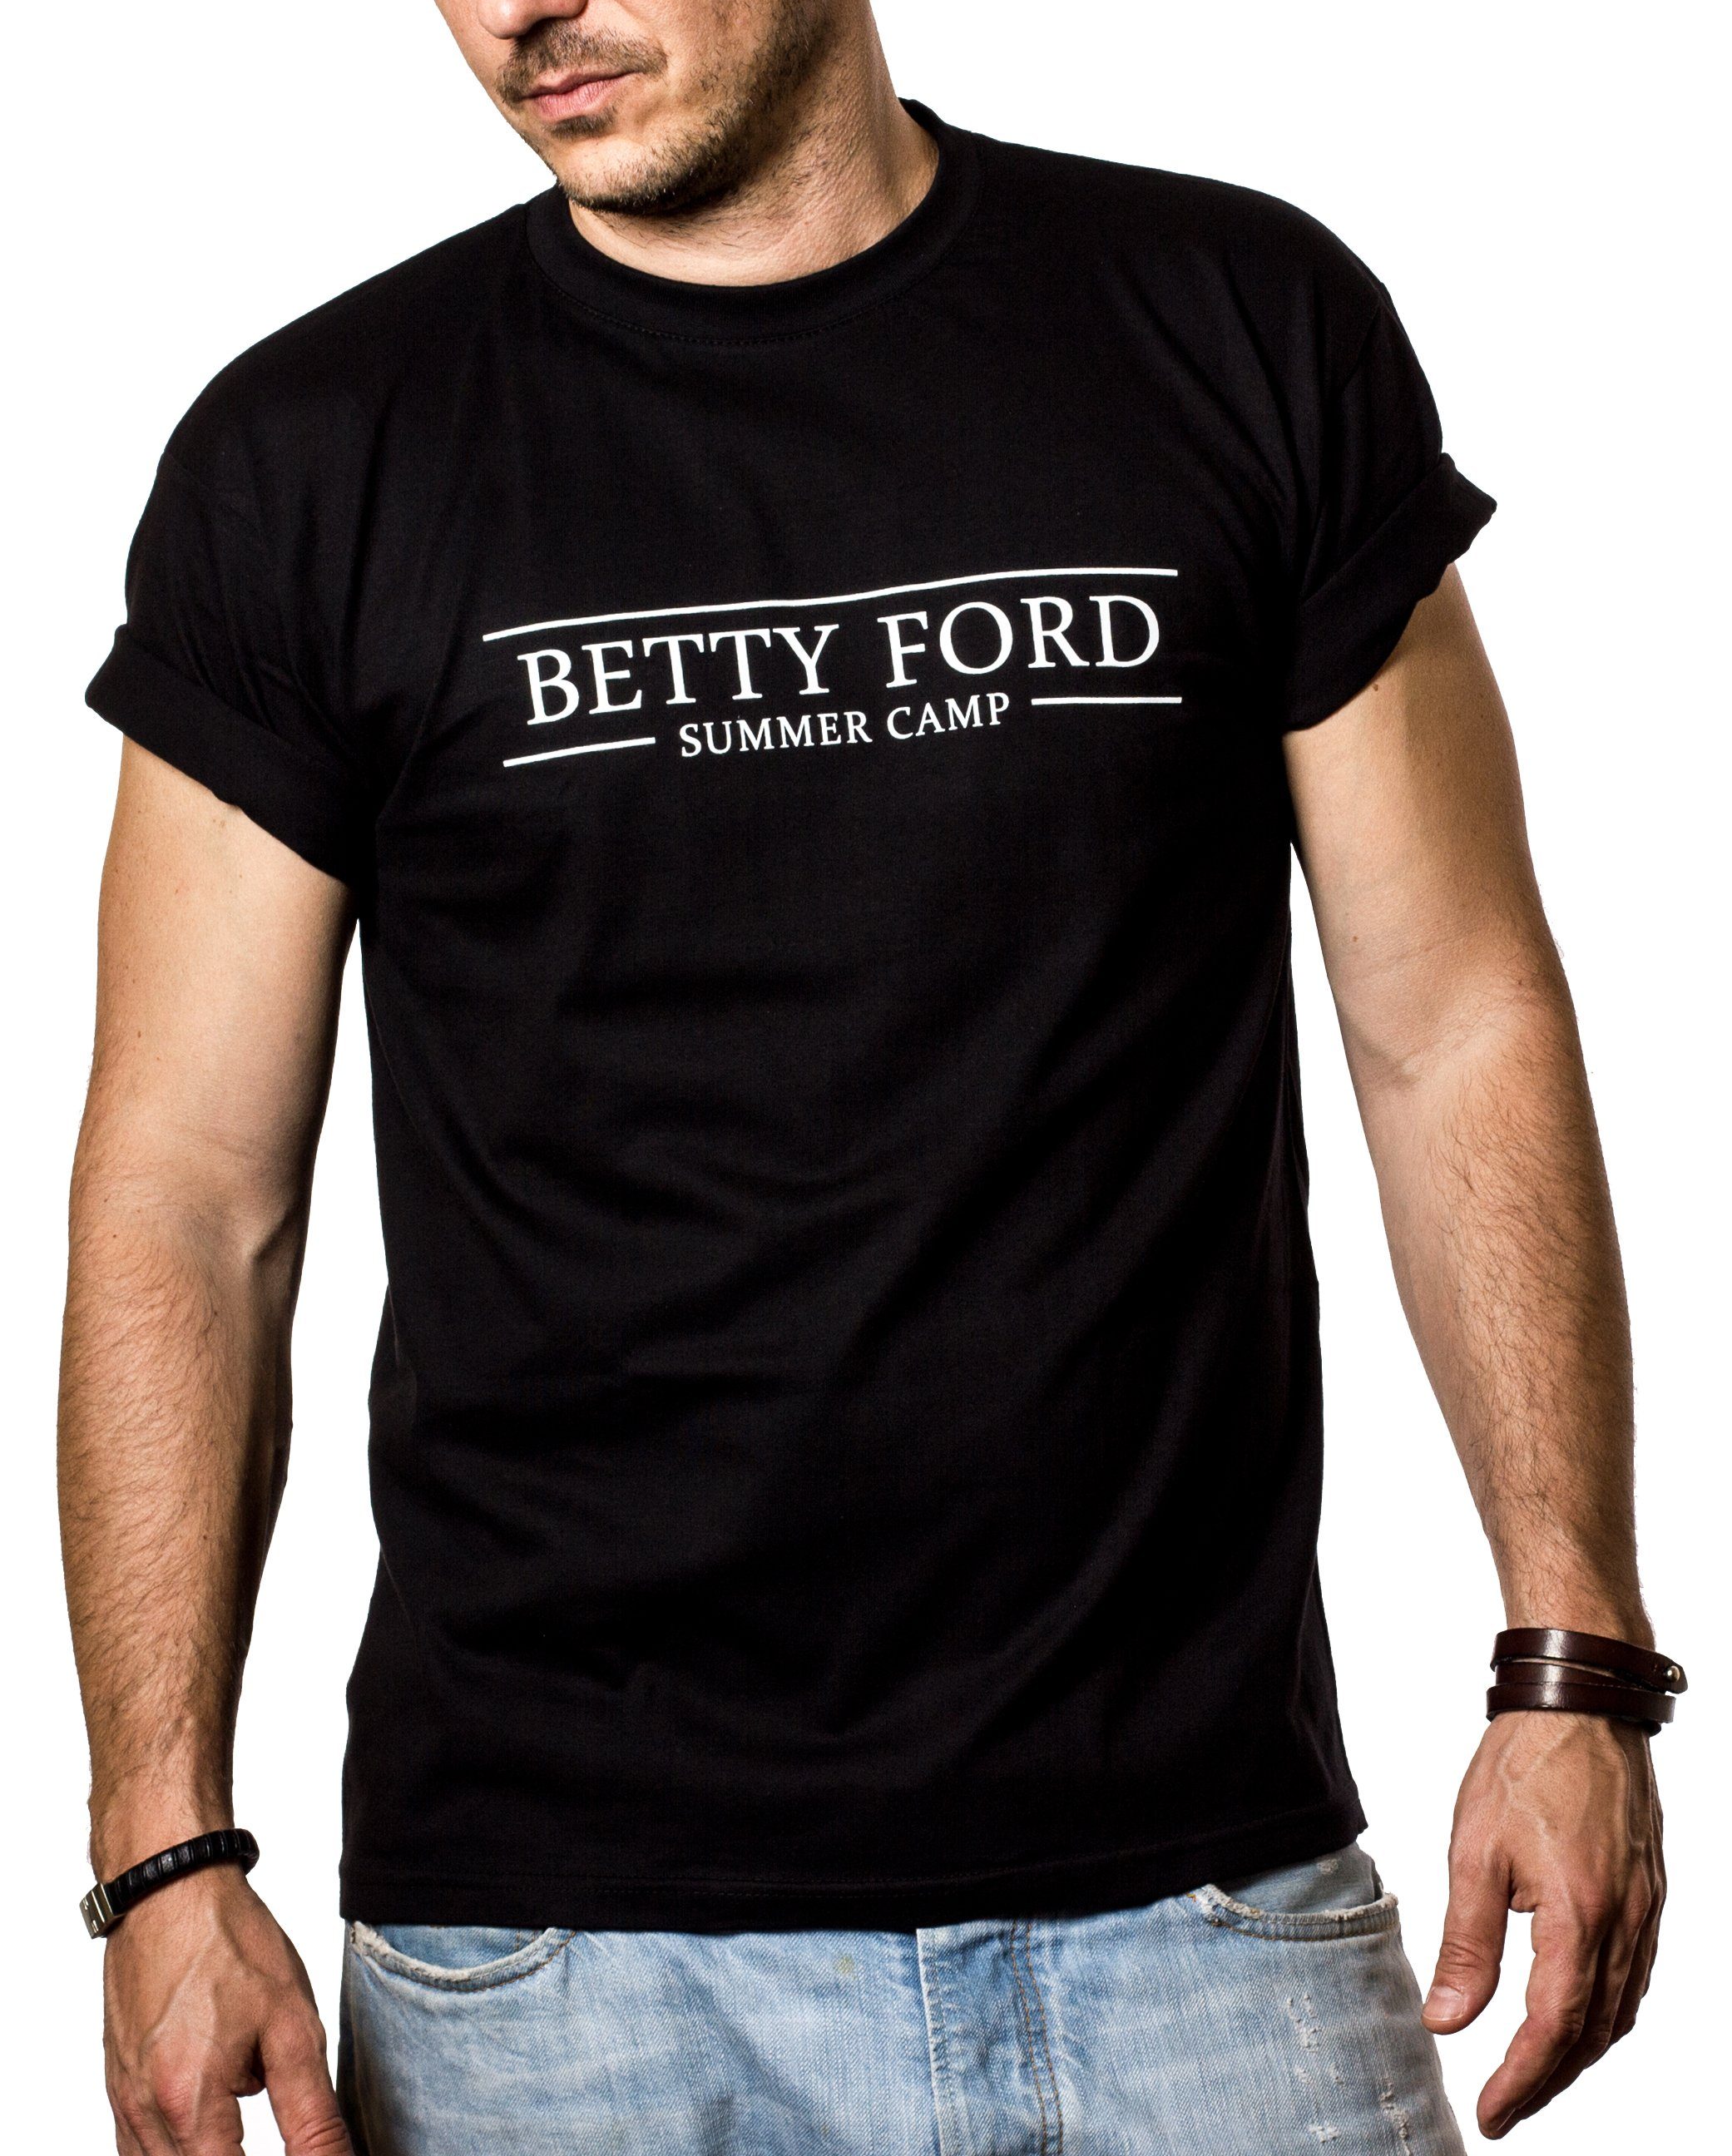 Lustig Grill Betty Druck Sprüche MAKAYA Party Herren/Männer Outfit Camp Print-Shirt Summer Ford mit